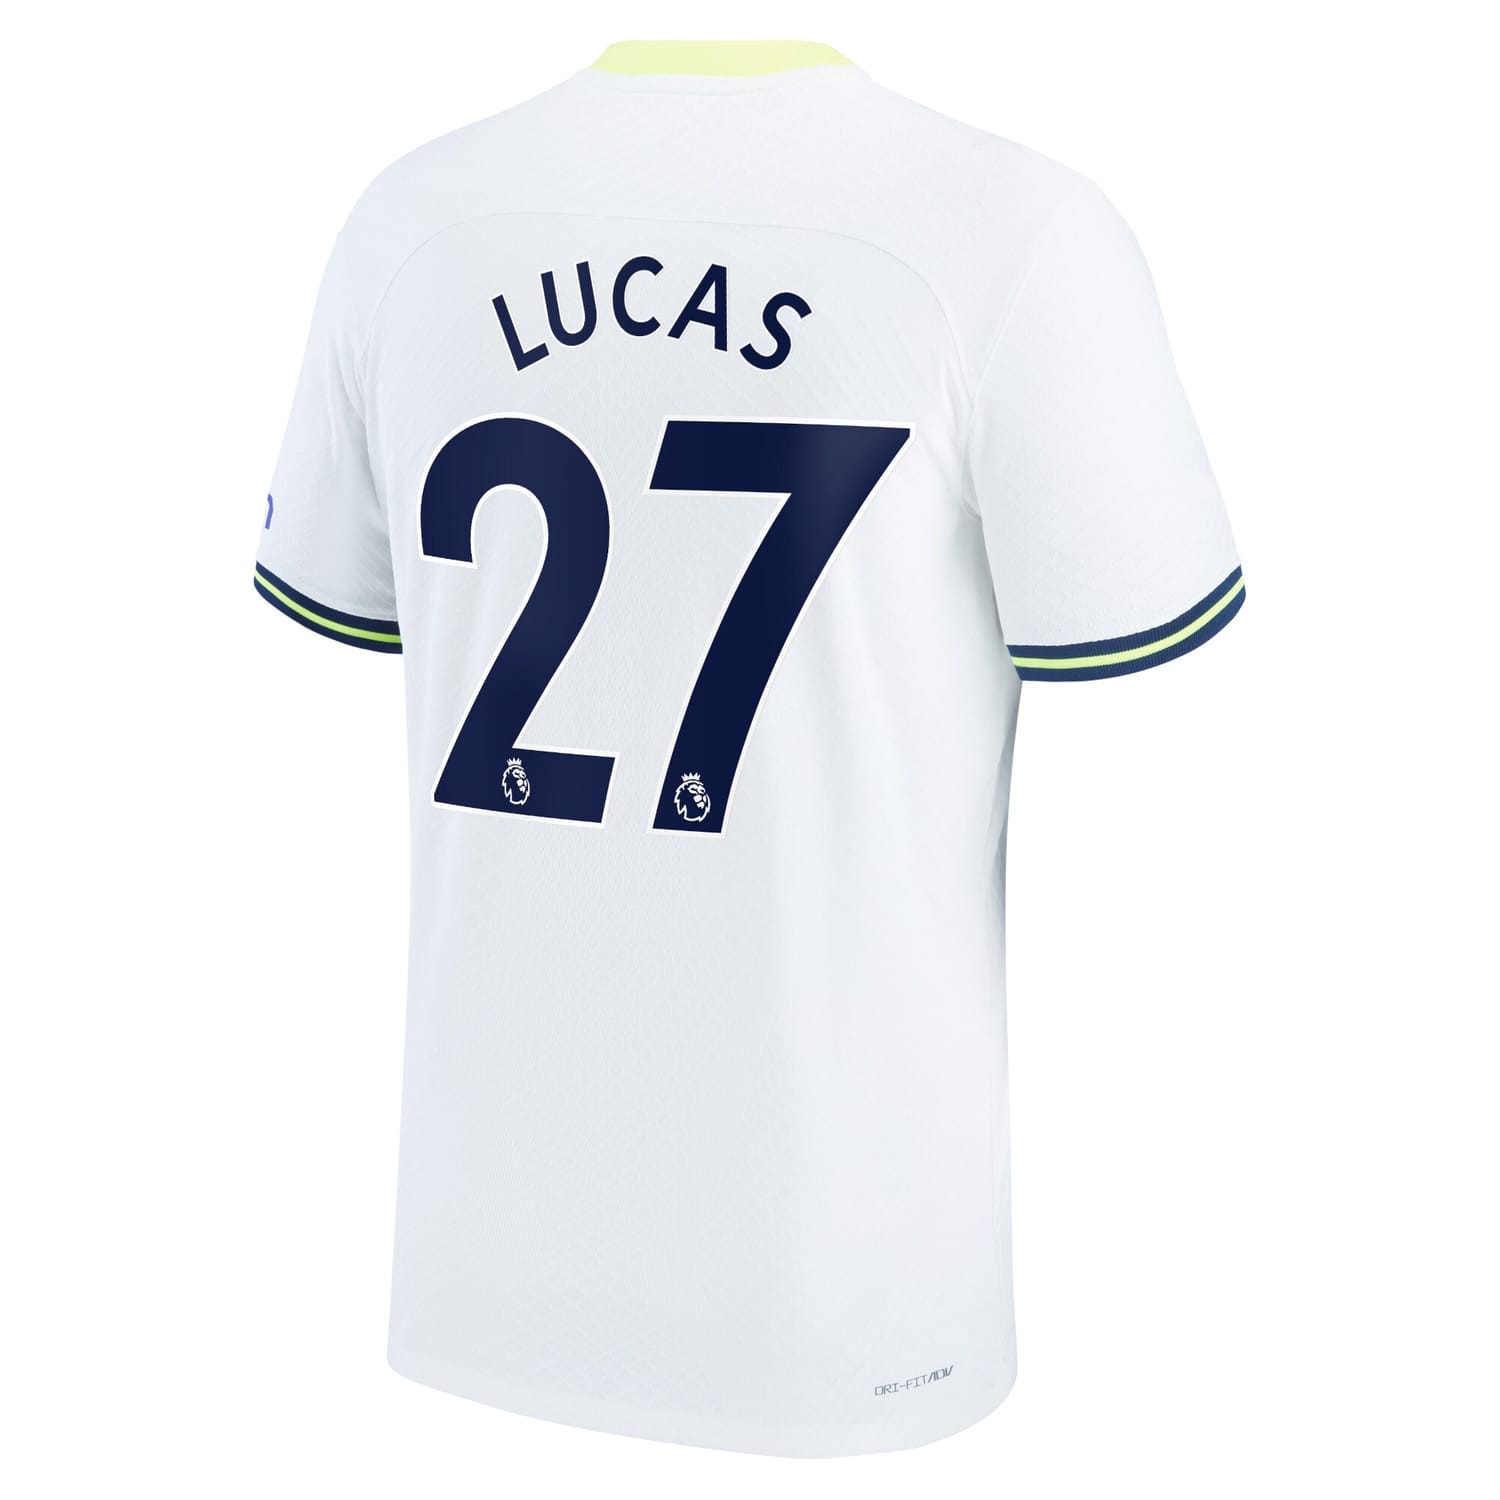 Premier League Tottenham Hotspur Home Authentic Jersey Shirt 2022-23 player Lucas Hernandez 27 printing for Men